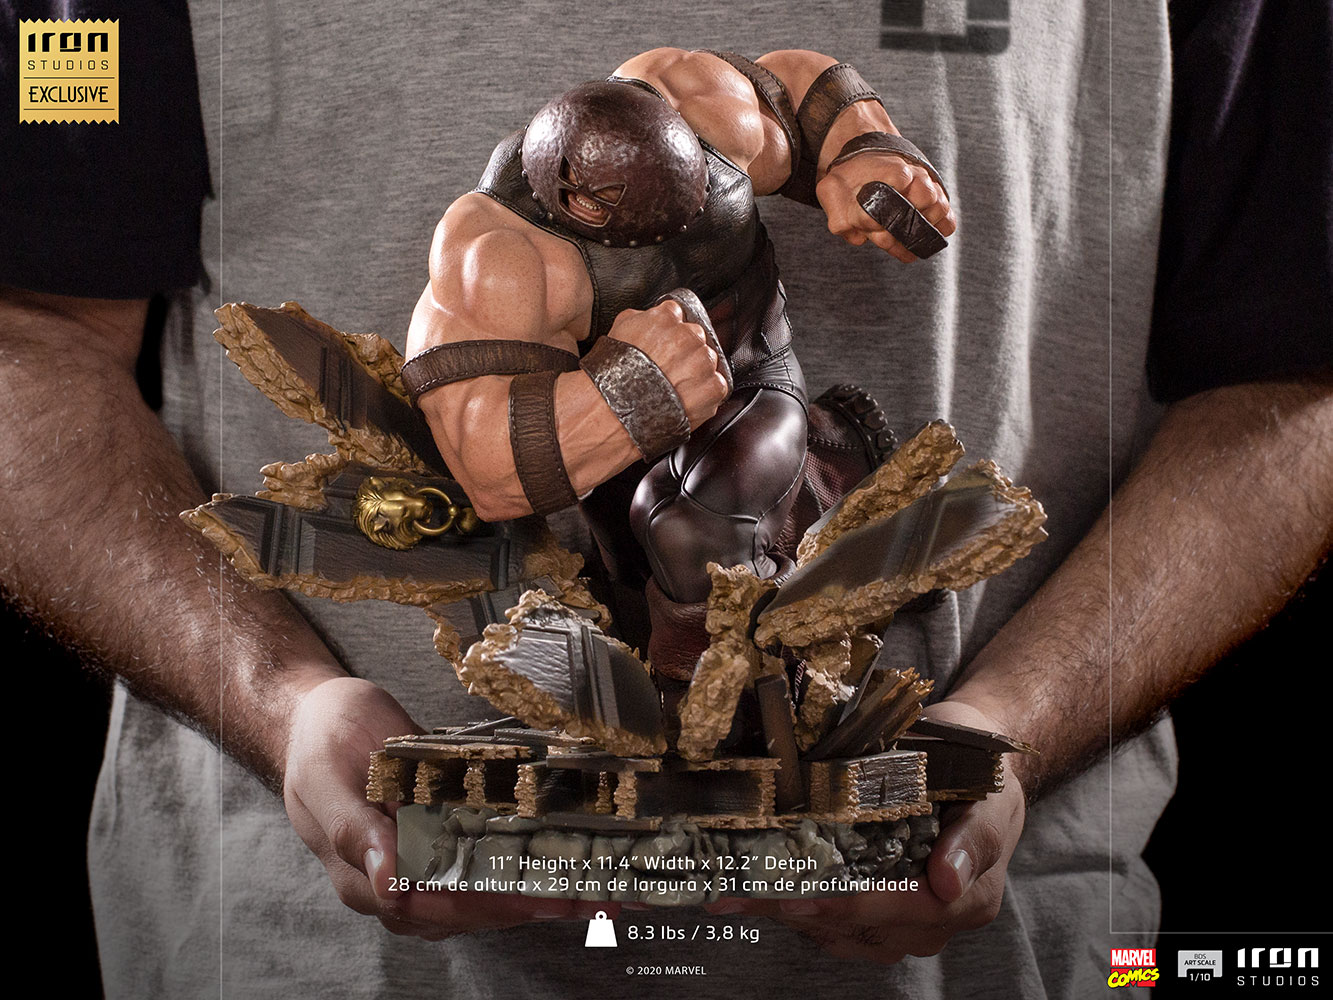 IRON STUDIOS : Juggernaut 1/10 Scale Statue Juggernaut-110-scale-statue-iron-studios_marvel_gallery_6081b4aec88ba